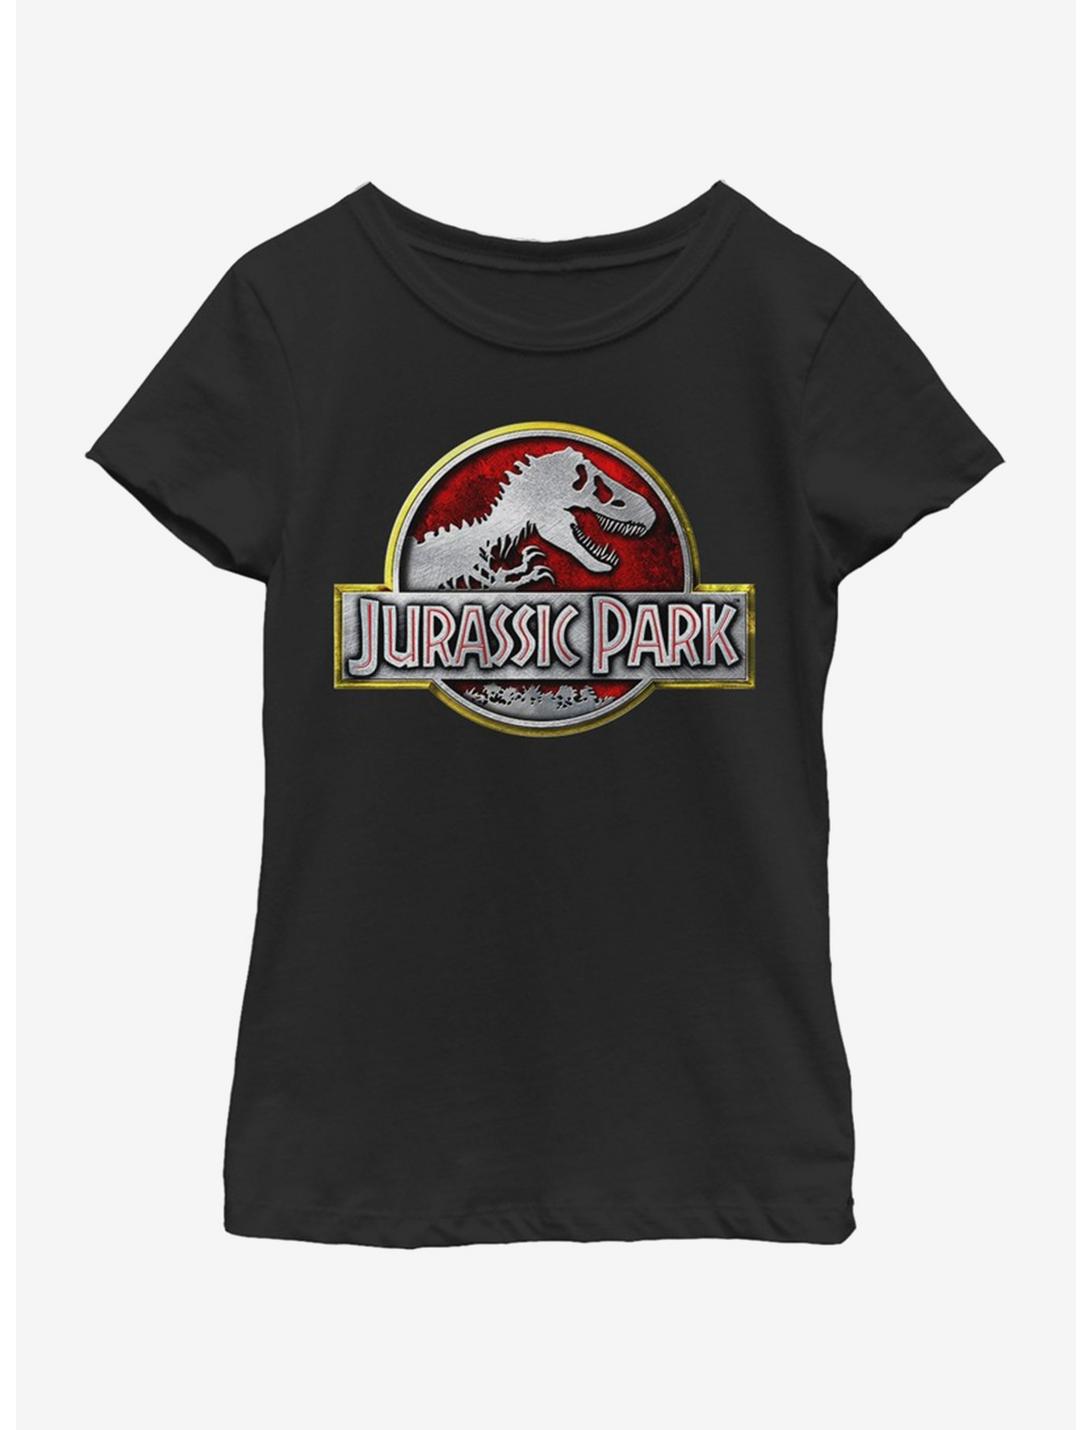 Jurassic Park Chrome Logo Youth Girls T-Shirt, BLACK, hi-res